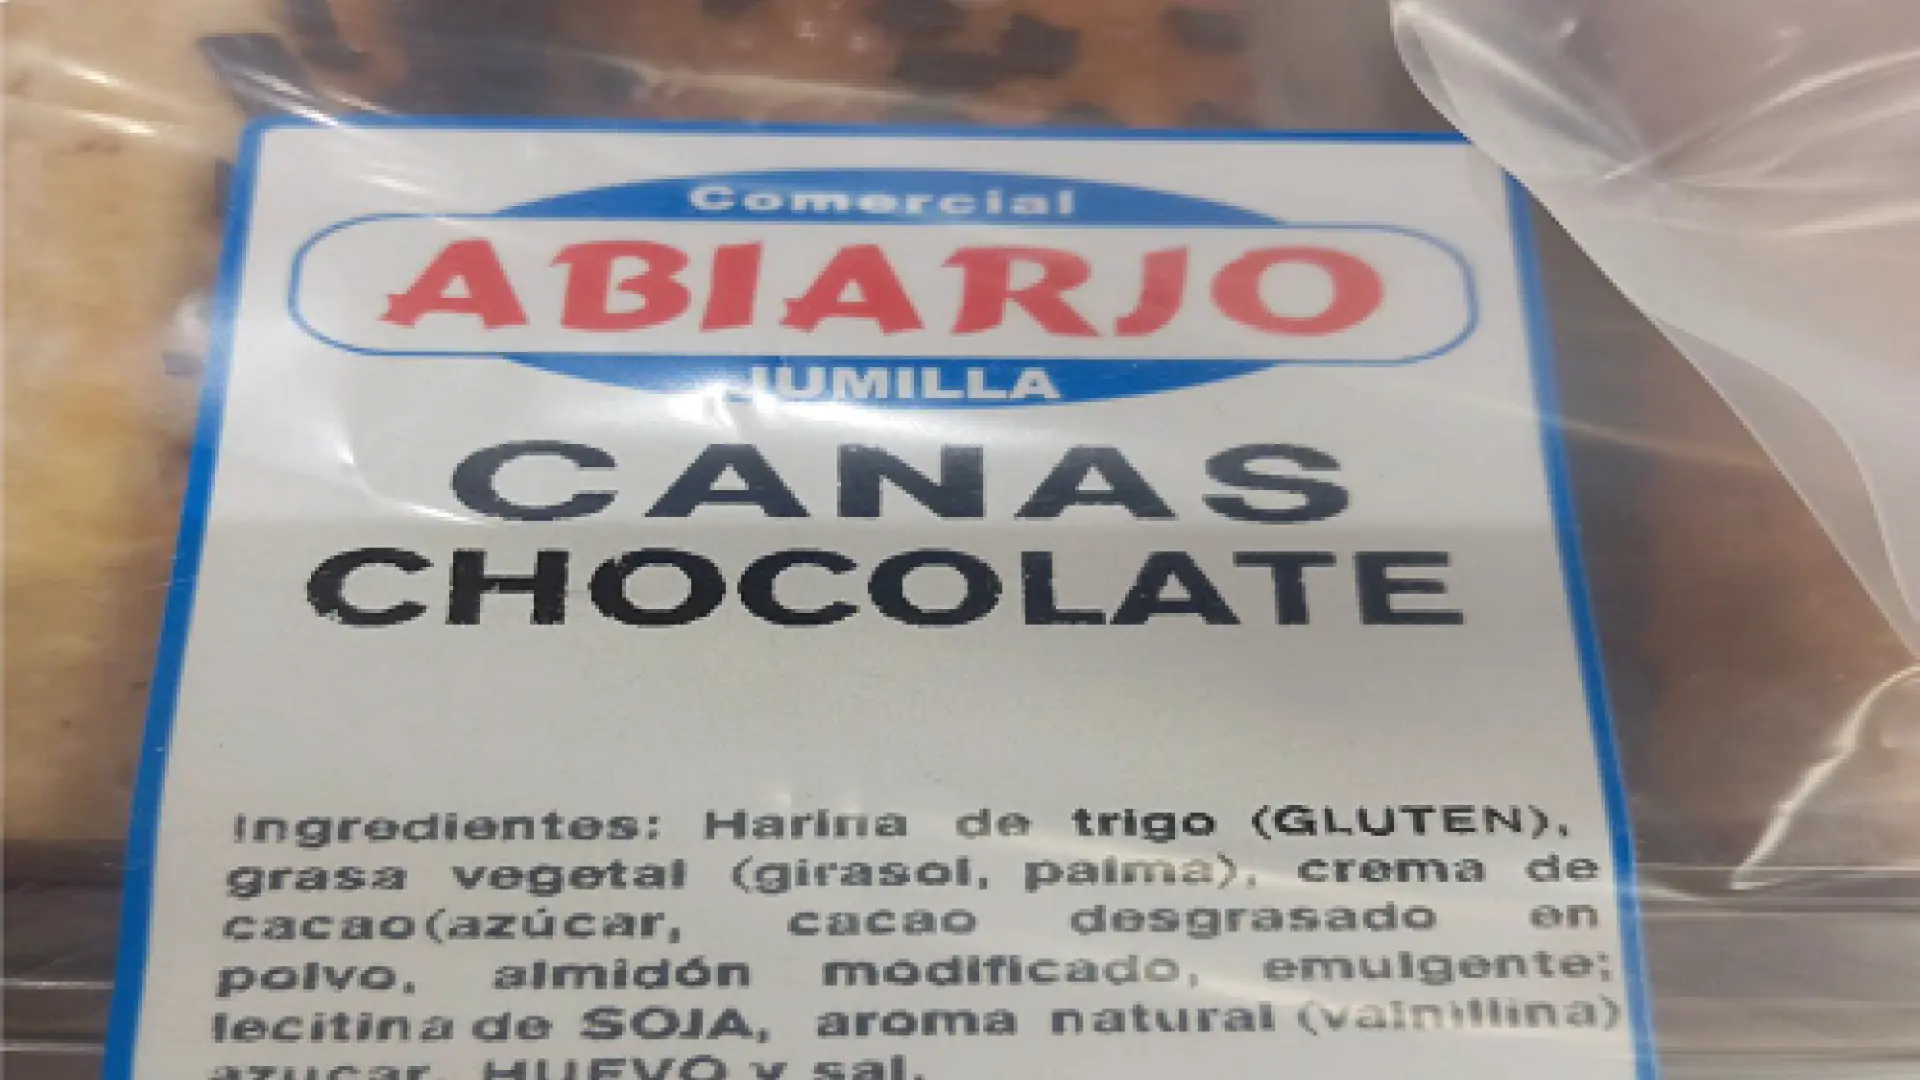 Alerta sanitaria: detectan frutos secos no declarados en cañas de chocolate procedentes de España